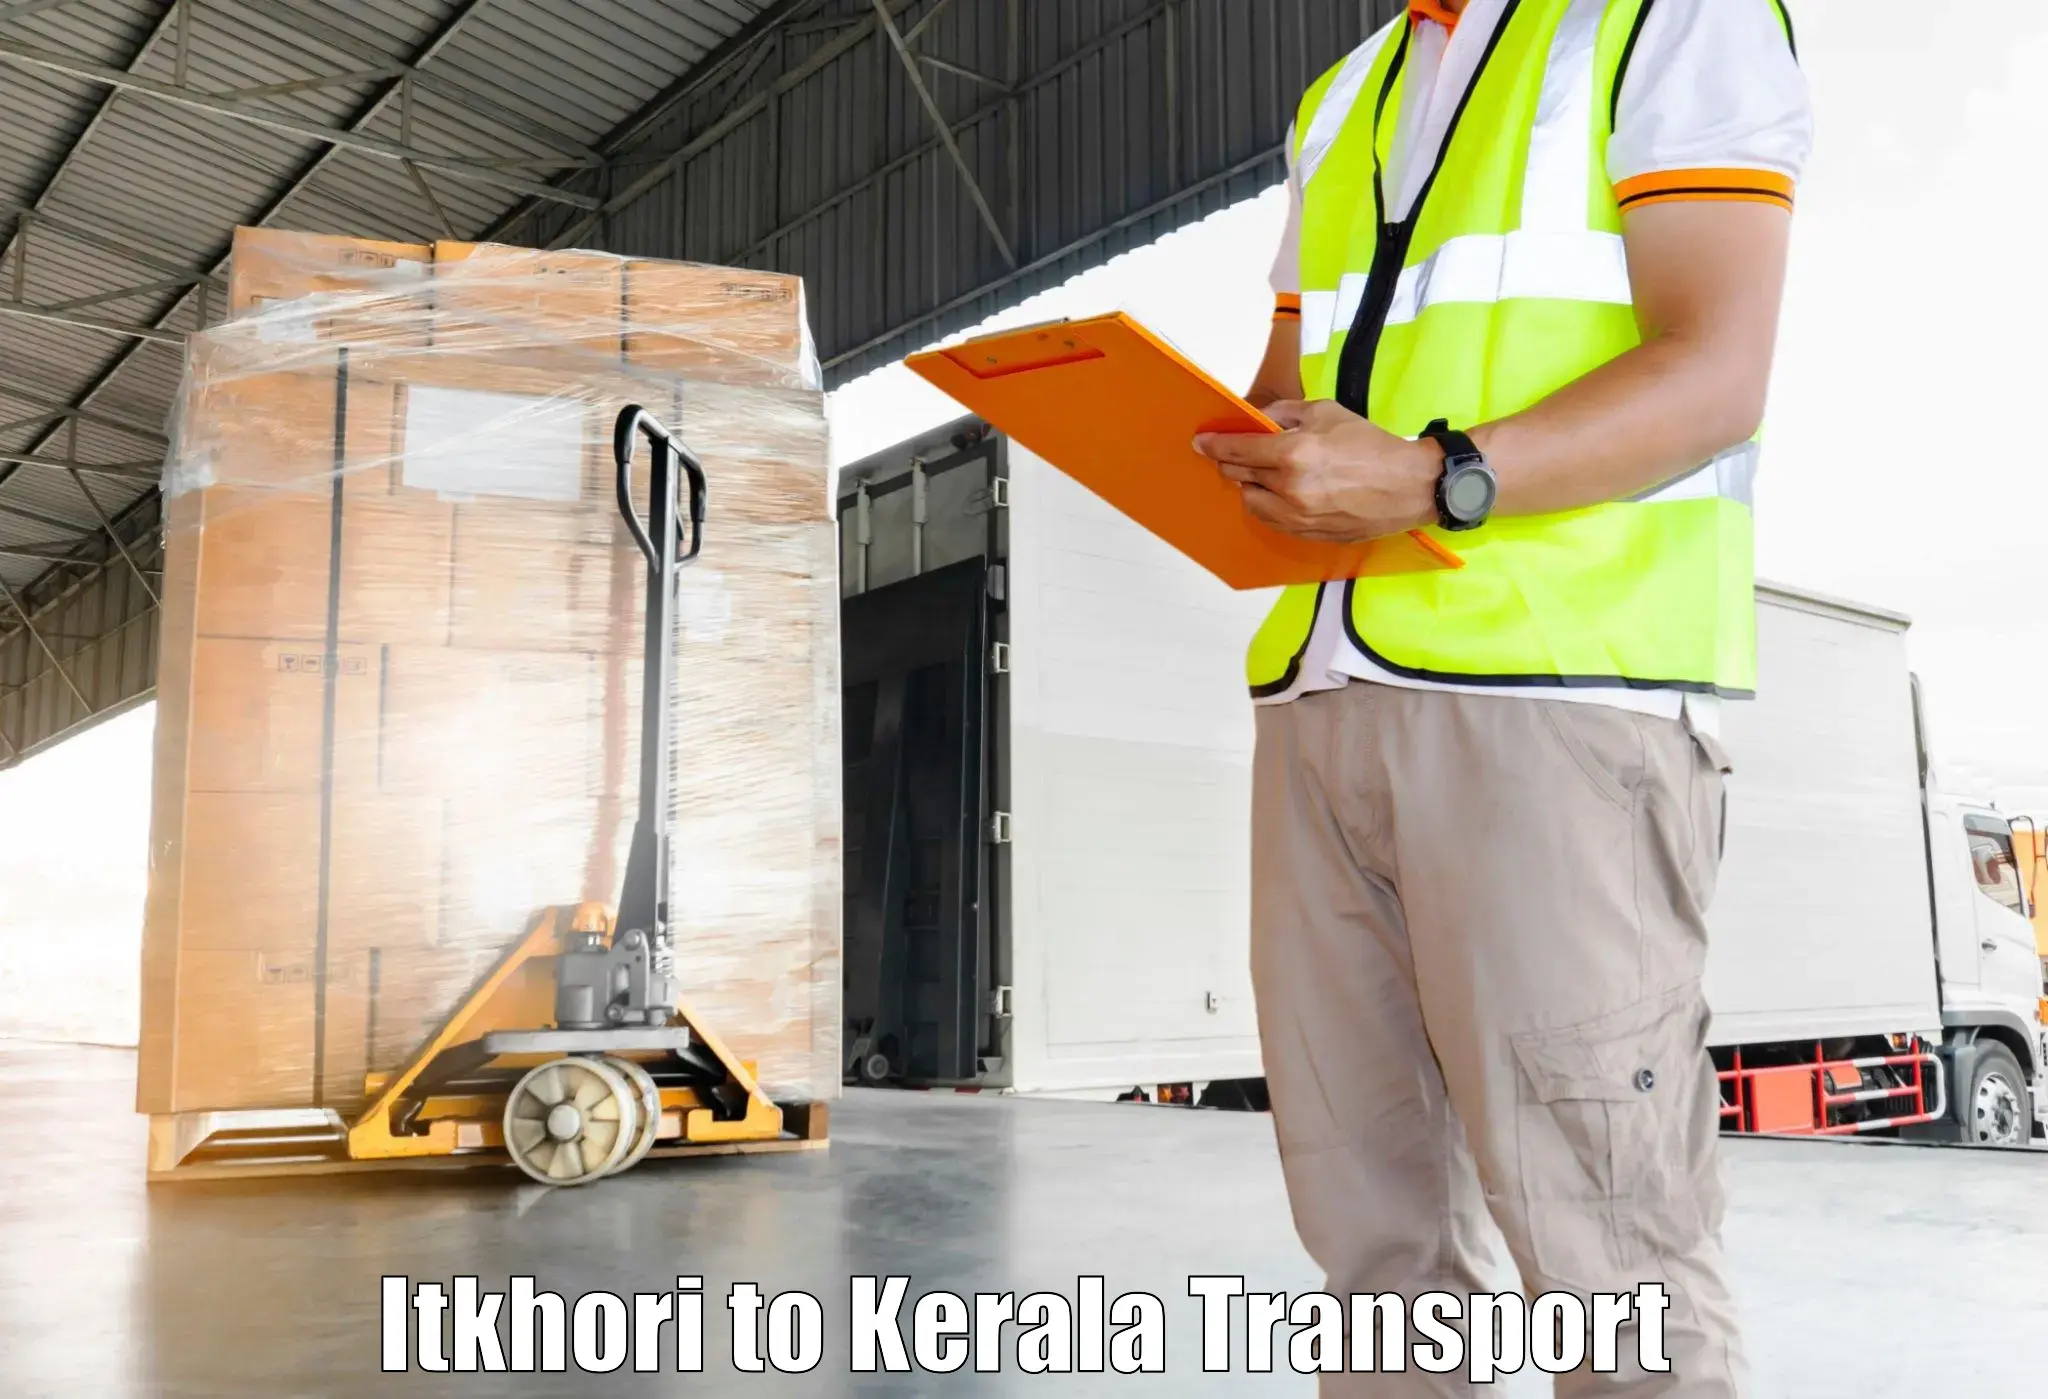 Nearest transport service Itkhori to Kallikkad